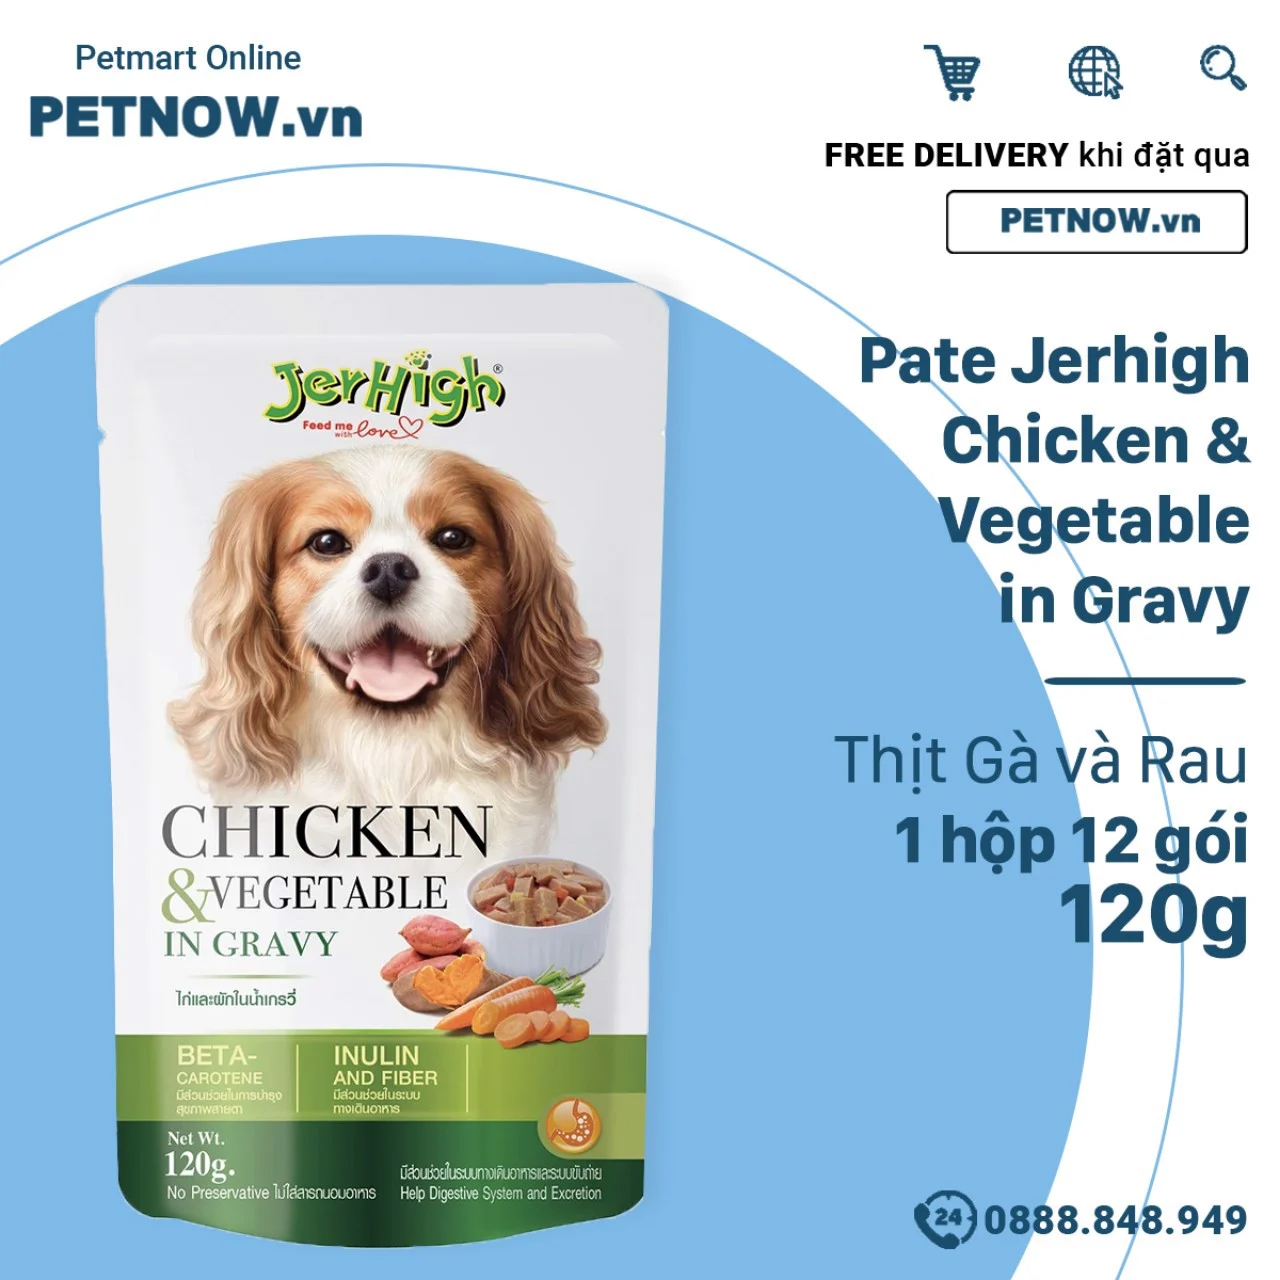 Pate Jerhigh Chicken & Vegetable in Gravy Thịt Gà và Rau 120g